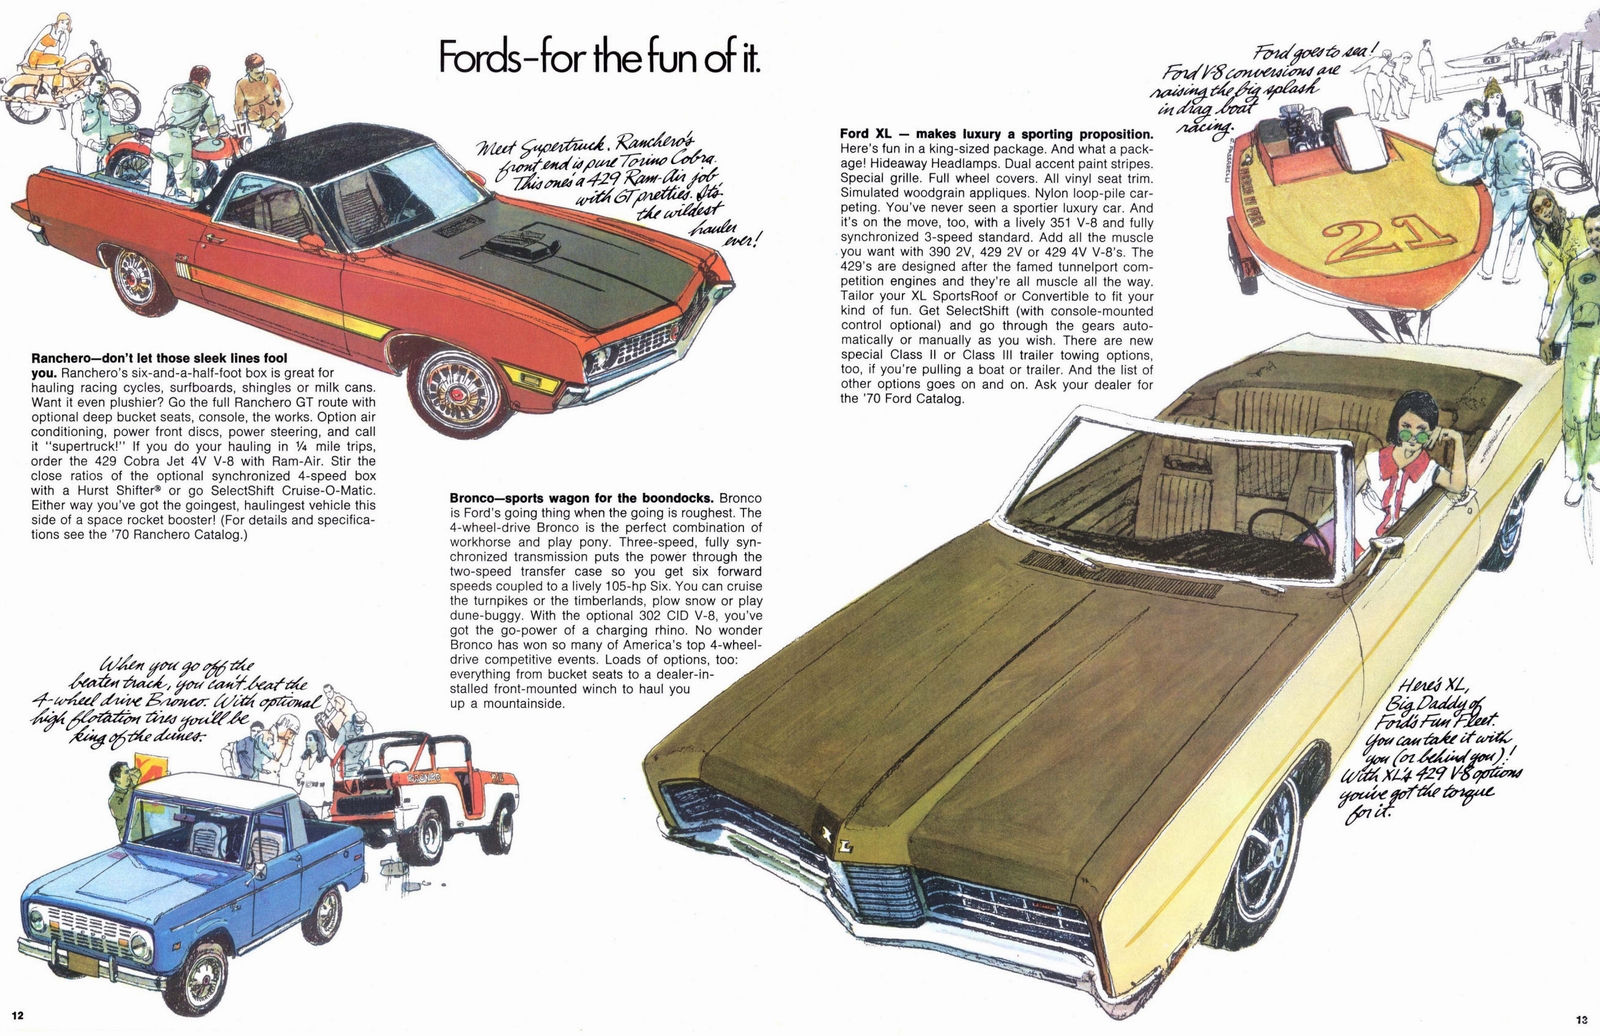 n_1970 Ford Performance Buyers Digest (Rev)-12-13.jpg